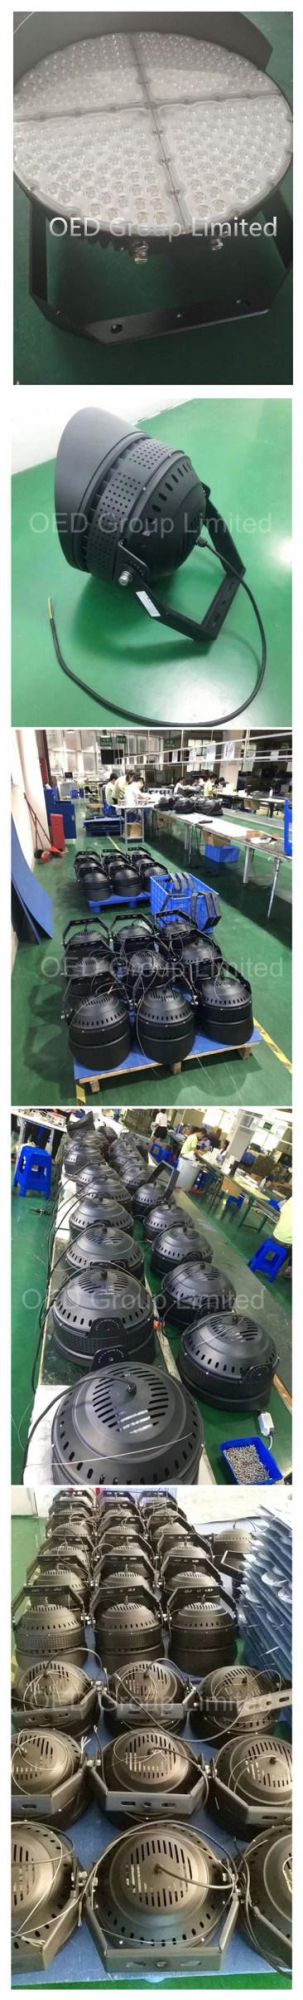 Shenzhen LED Manufacturer Round Shape 400W LED SMD Stadium Floodlight